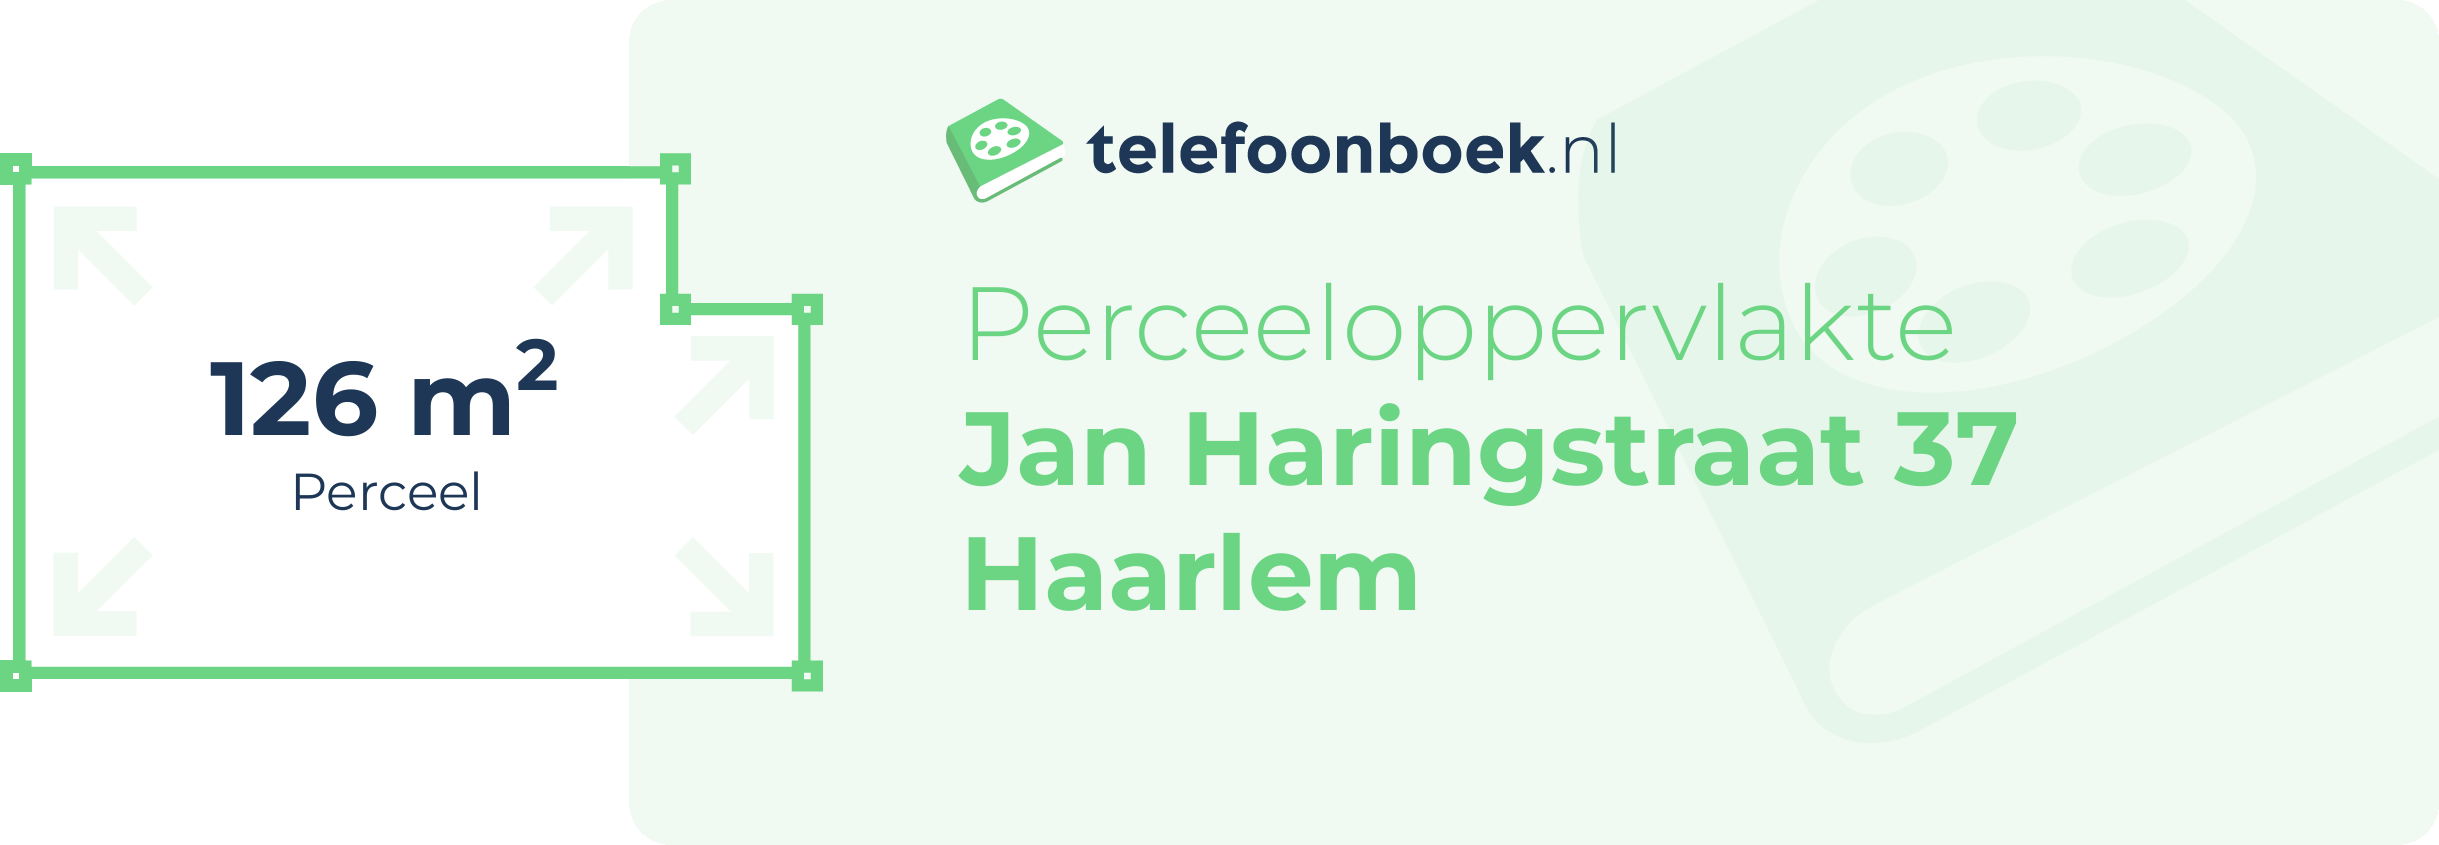 Perceeloppervlakte Jan Haringstraat 37 Haarlem